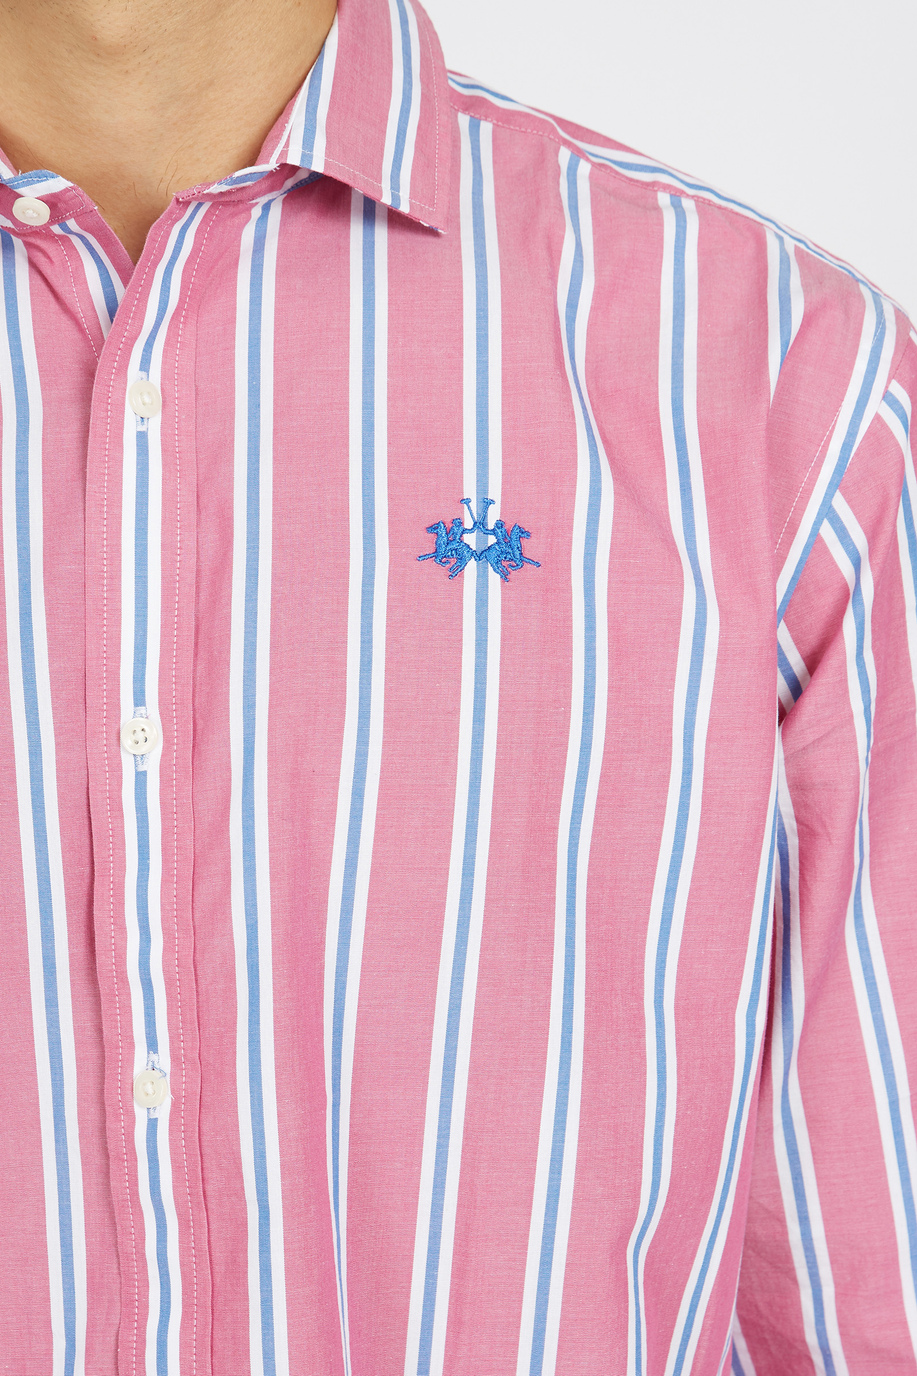 Chemise manches longues 100% coton regular fit homme rayée - Innocent - Chemises | La Martina - Official Online Shop